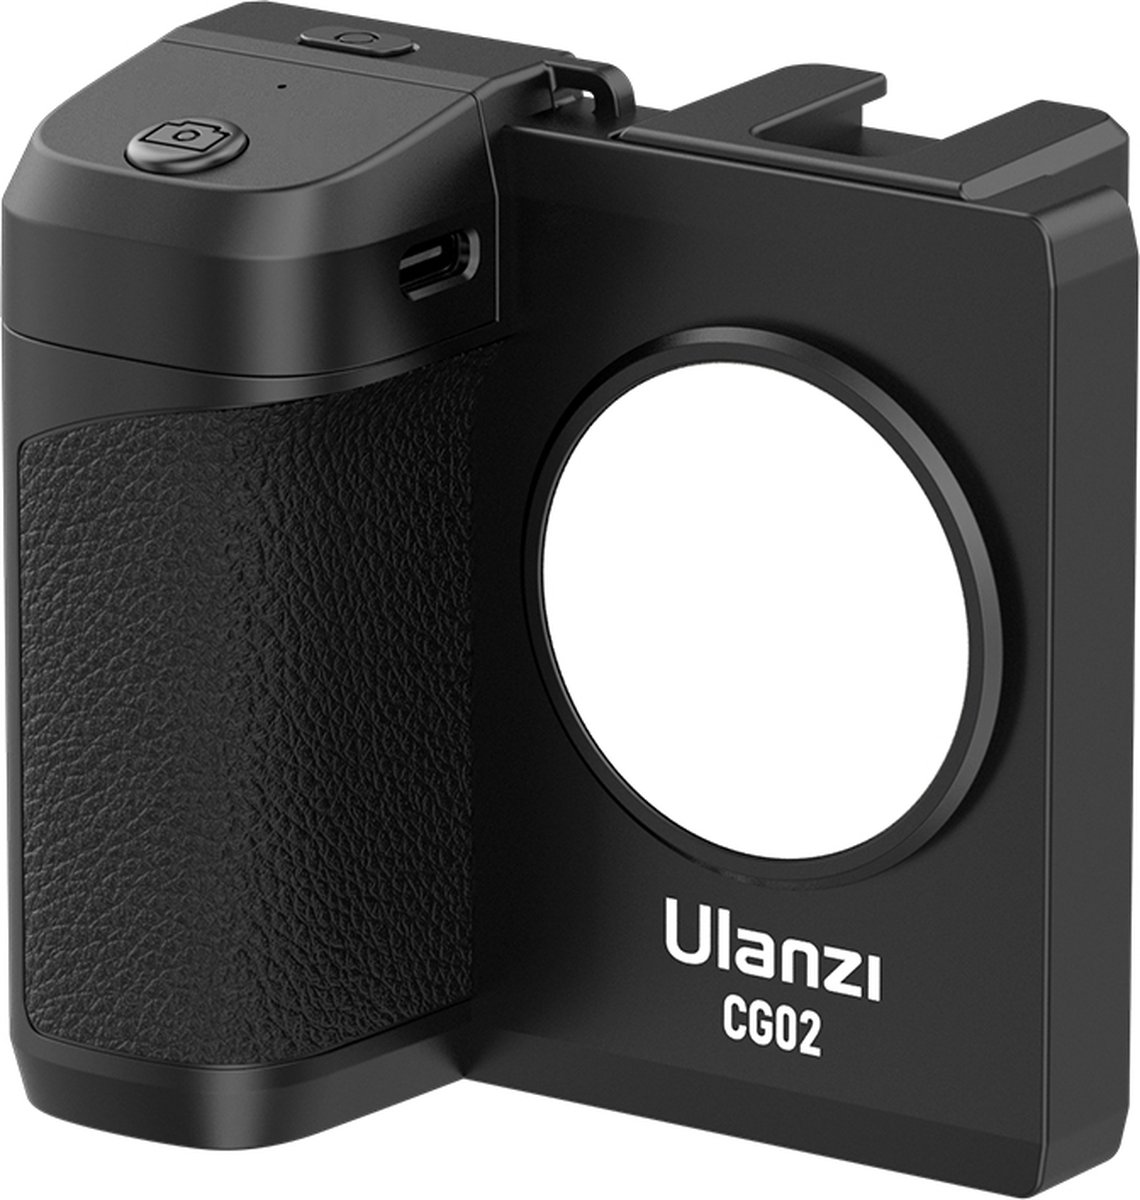 Ulanzi CapGrip LED smartphone camera grip met magnetische Bluetooth afstandsbediening - Universeel tot 8,6cm breed - 1/4 inch schroefaansluiting - Zwart - Ulanzi